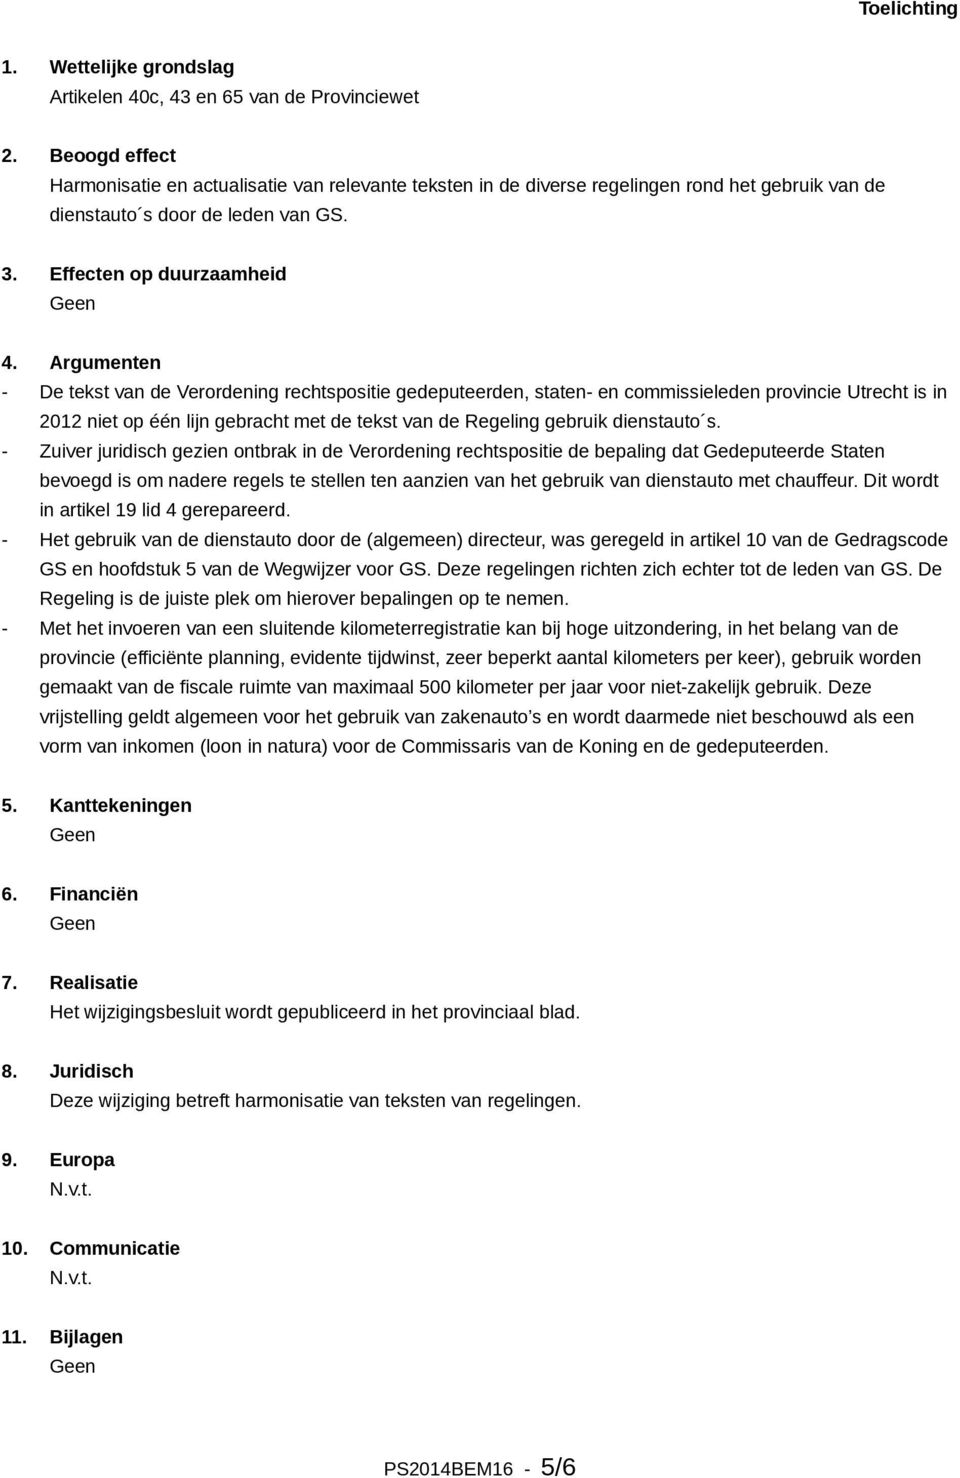 Argumenten - De tekst van de Verordening rechtspositie gedeputeerden, staten- en commissieleden provincie Utrecht is in 2012 niet op één lijn gebracht met de tekst van de Regeling gebruik dienstauto